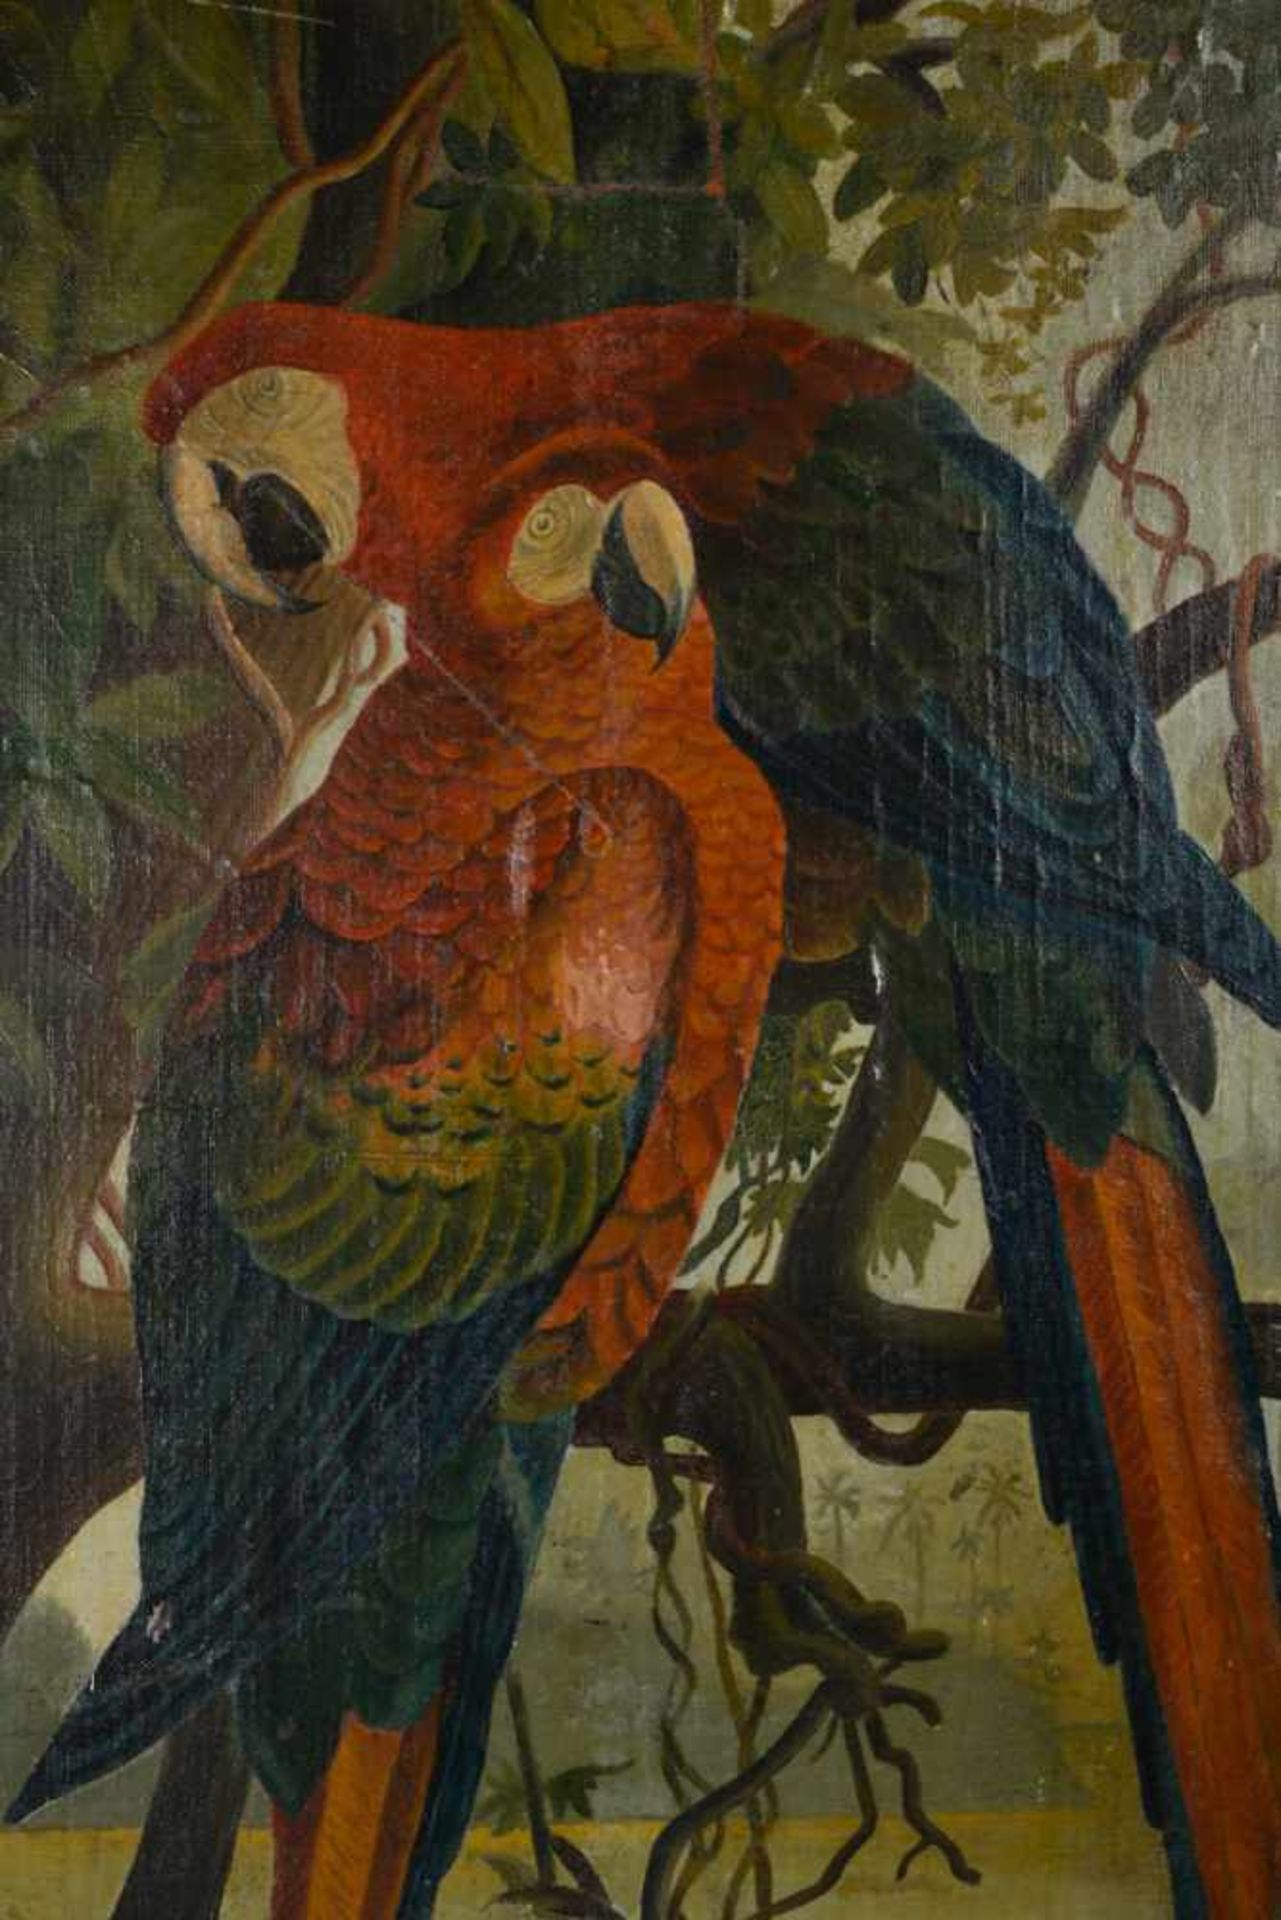 Papageienvögel in natürlicher Umgebung. Öl auf Leinwand auf Holz kaschiert, Datierung um 1890, - Bild 6 aus 7